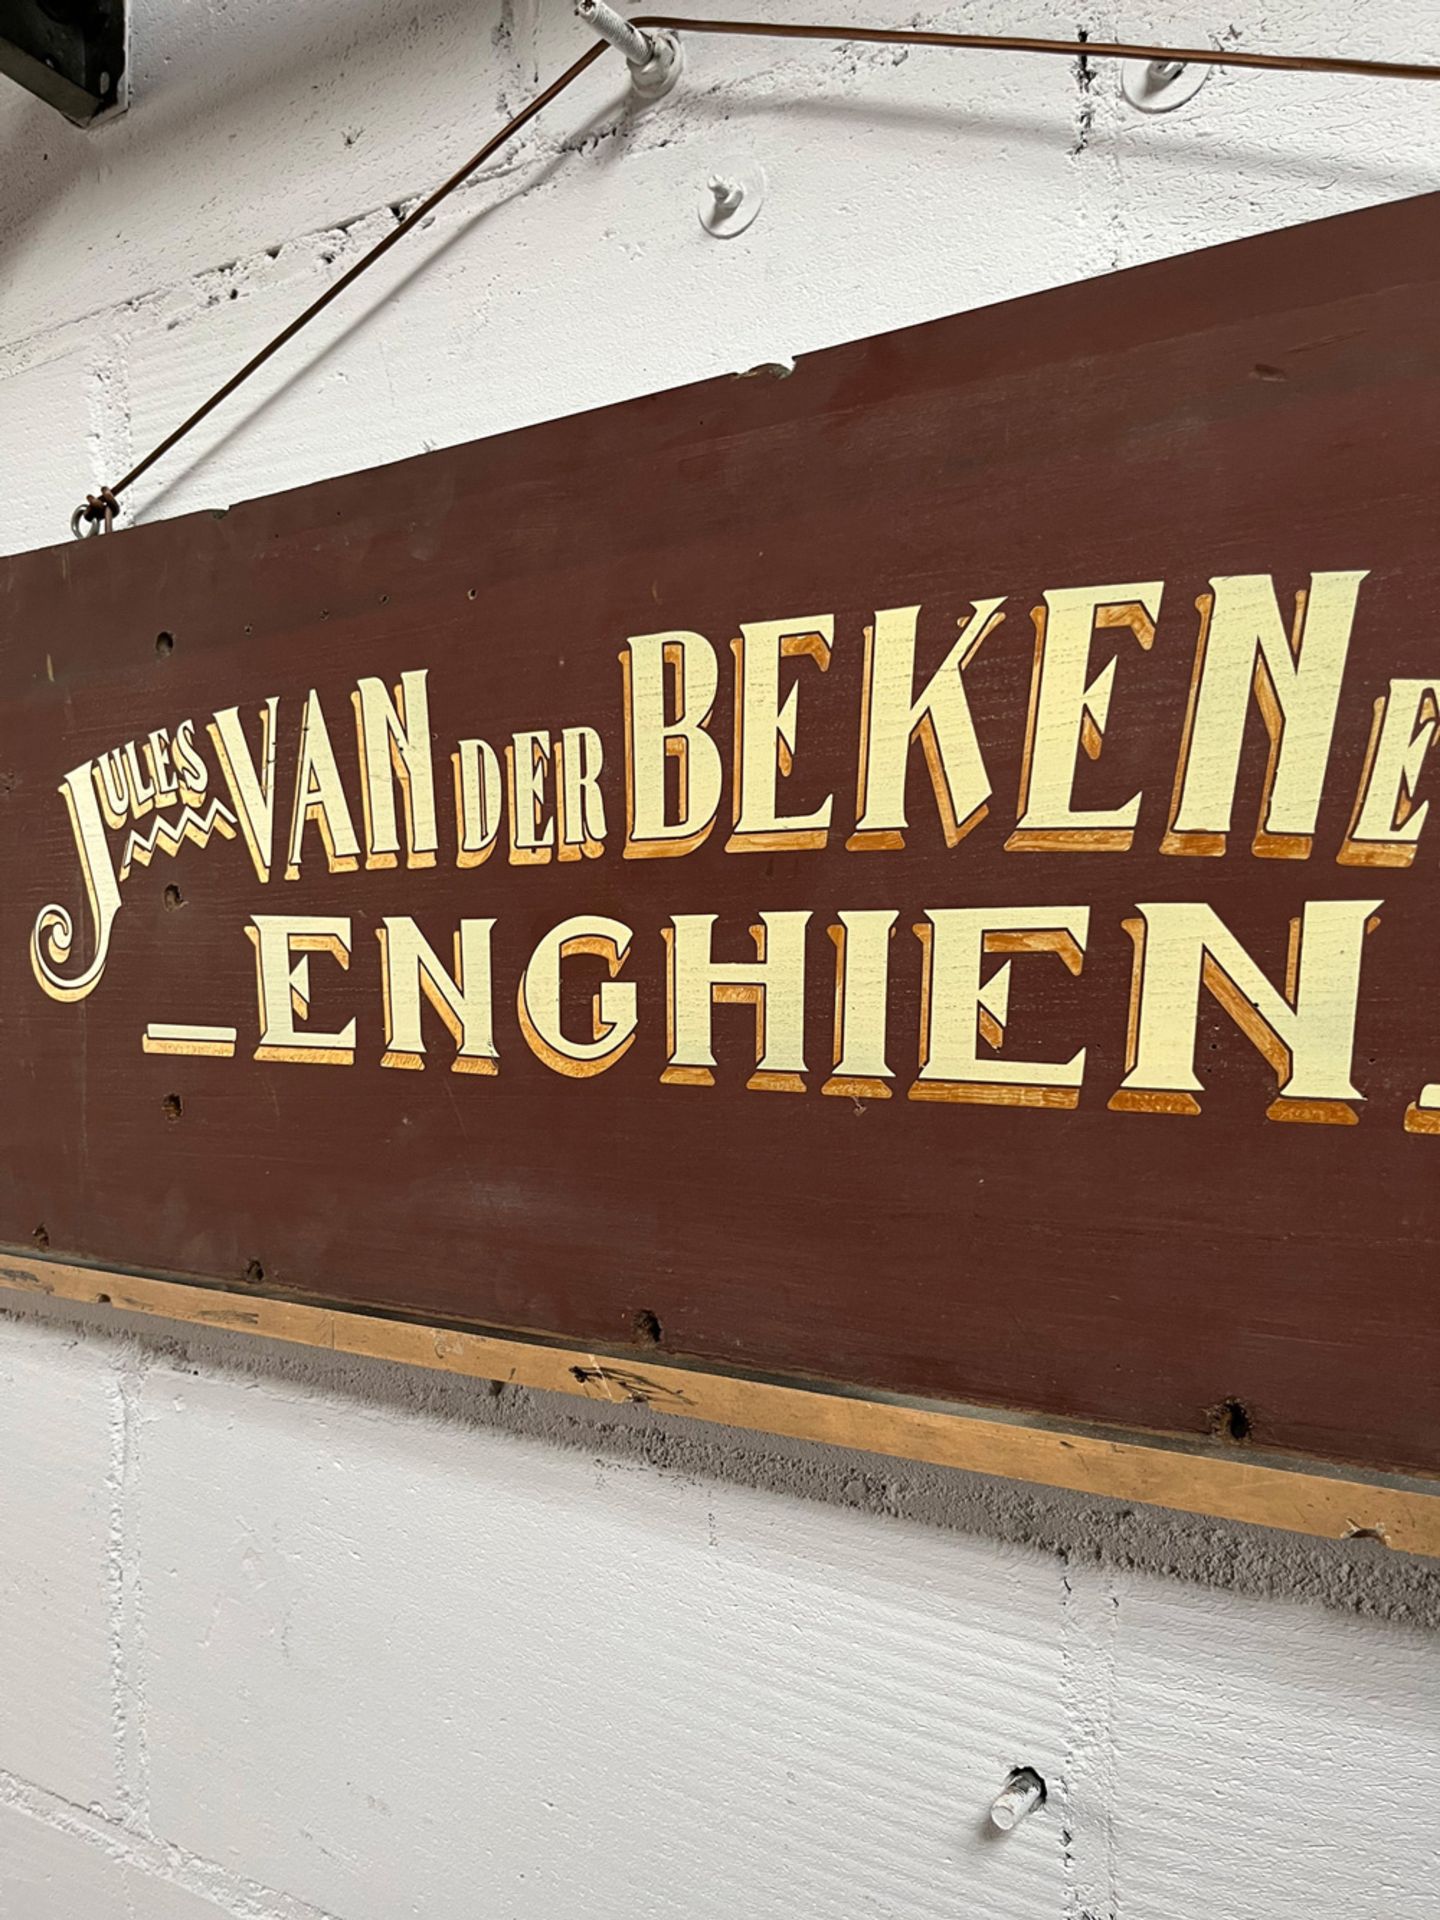 Wooden Jules van der Beken & Sons Advertisement Sign - Image 3 of 8